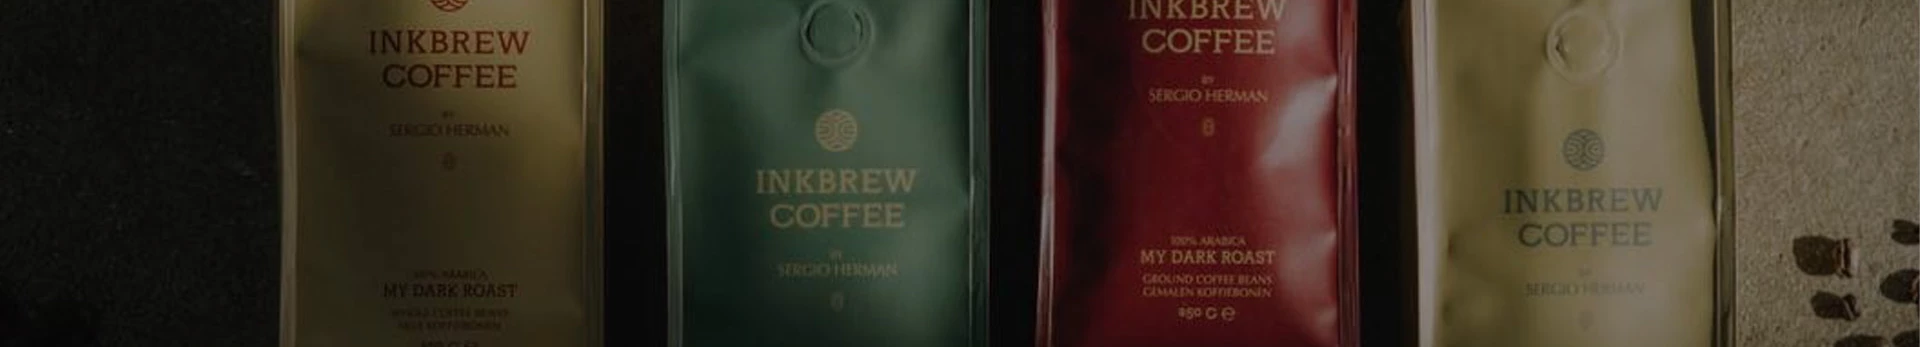 Inkbrew Coffee